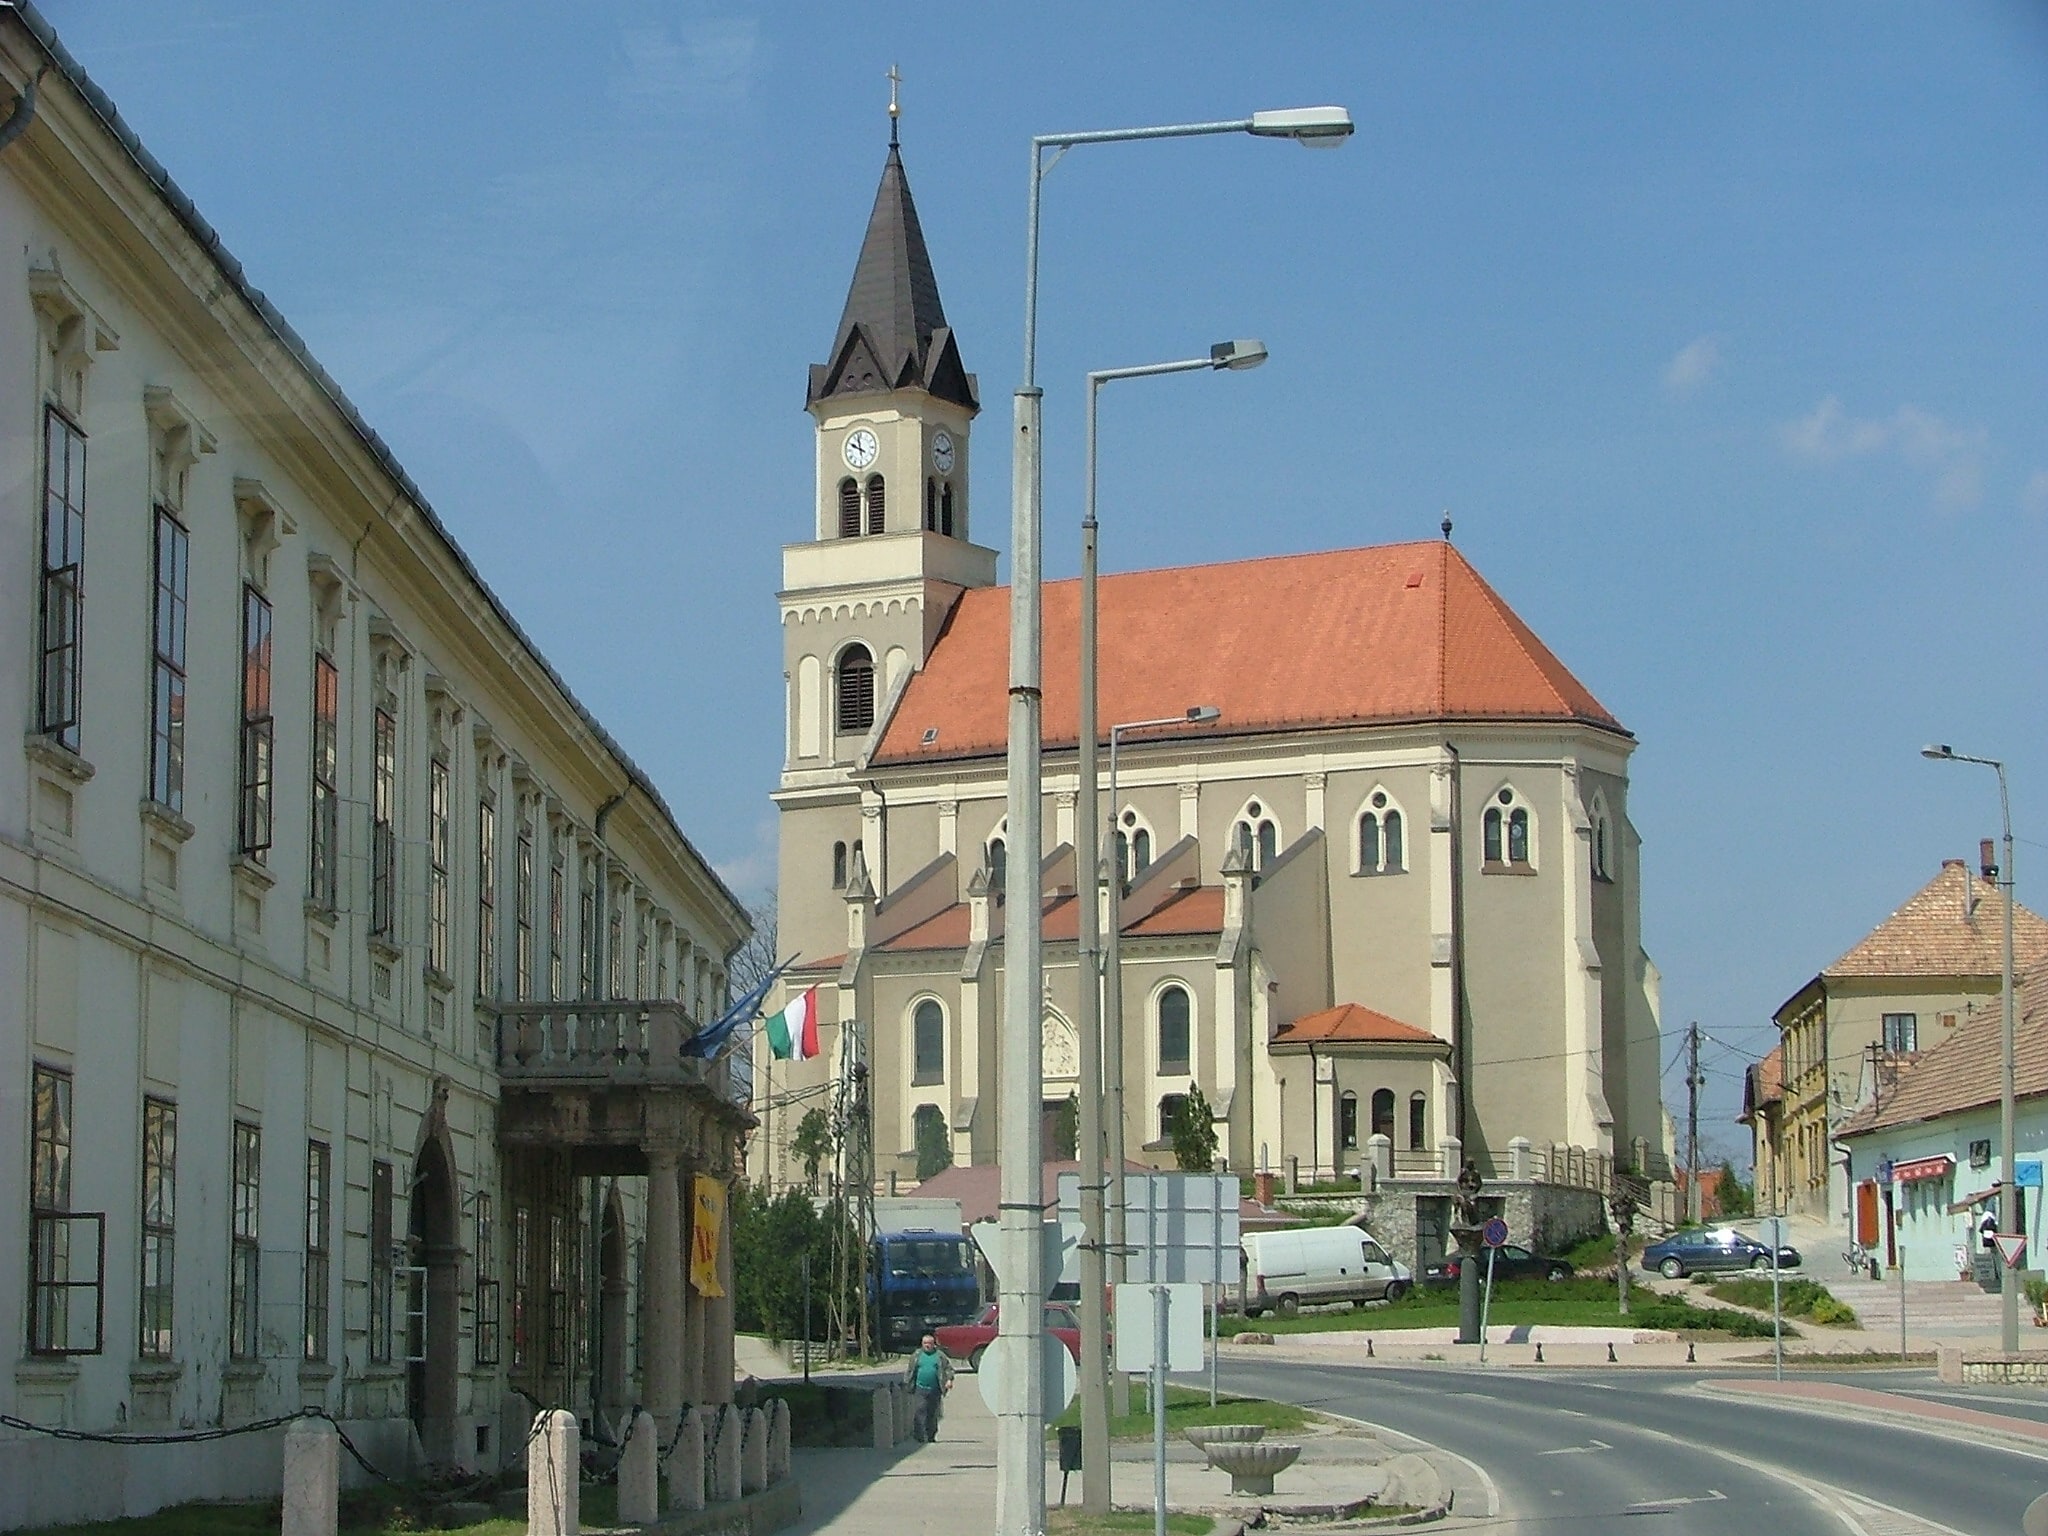 Mór, Hungary